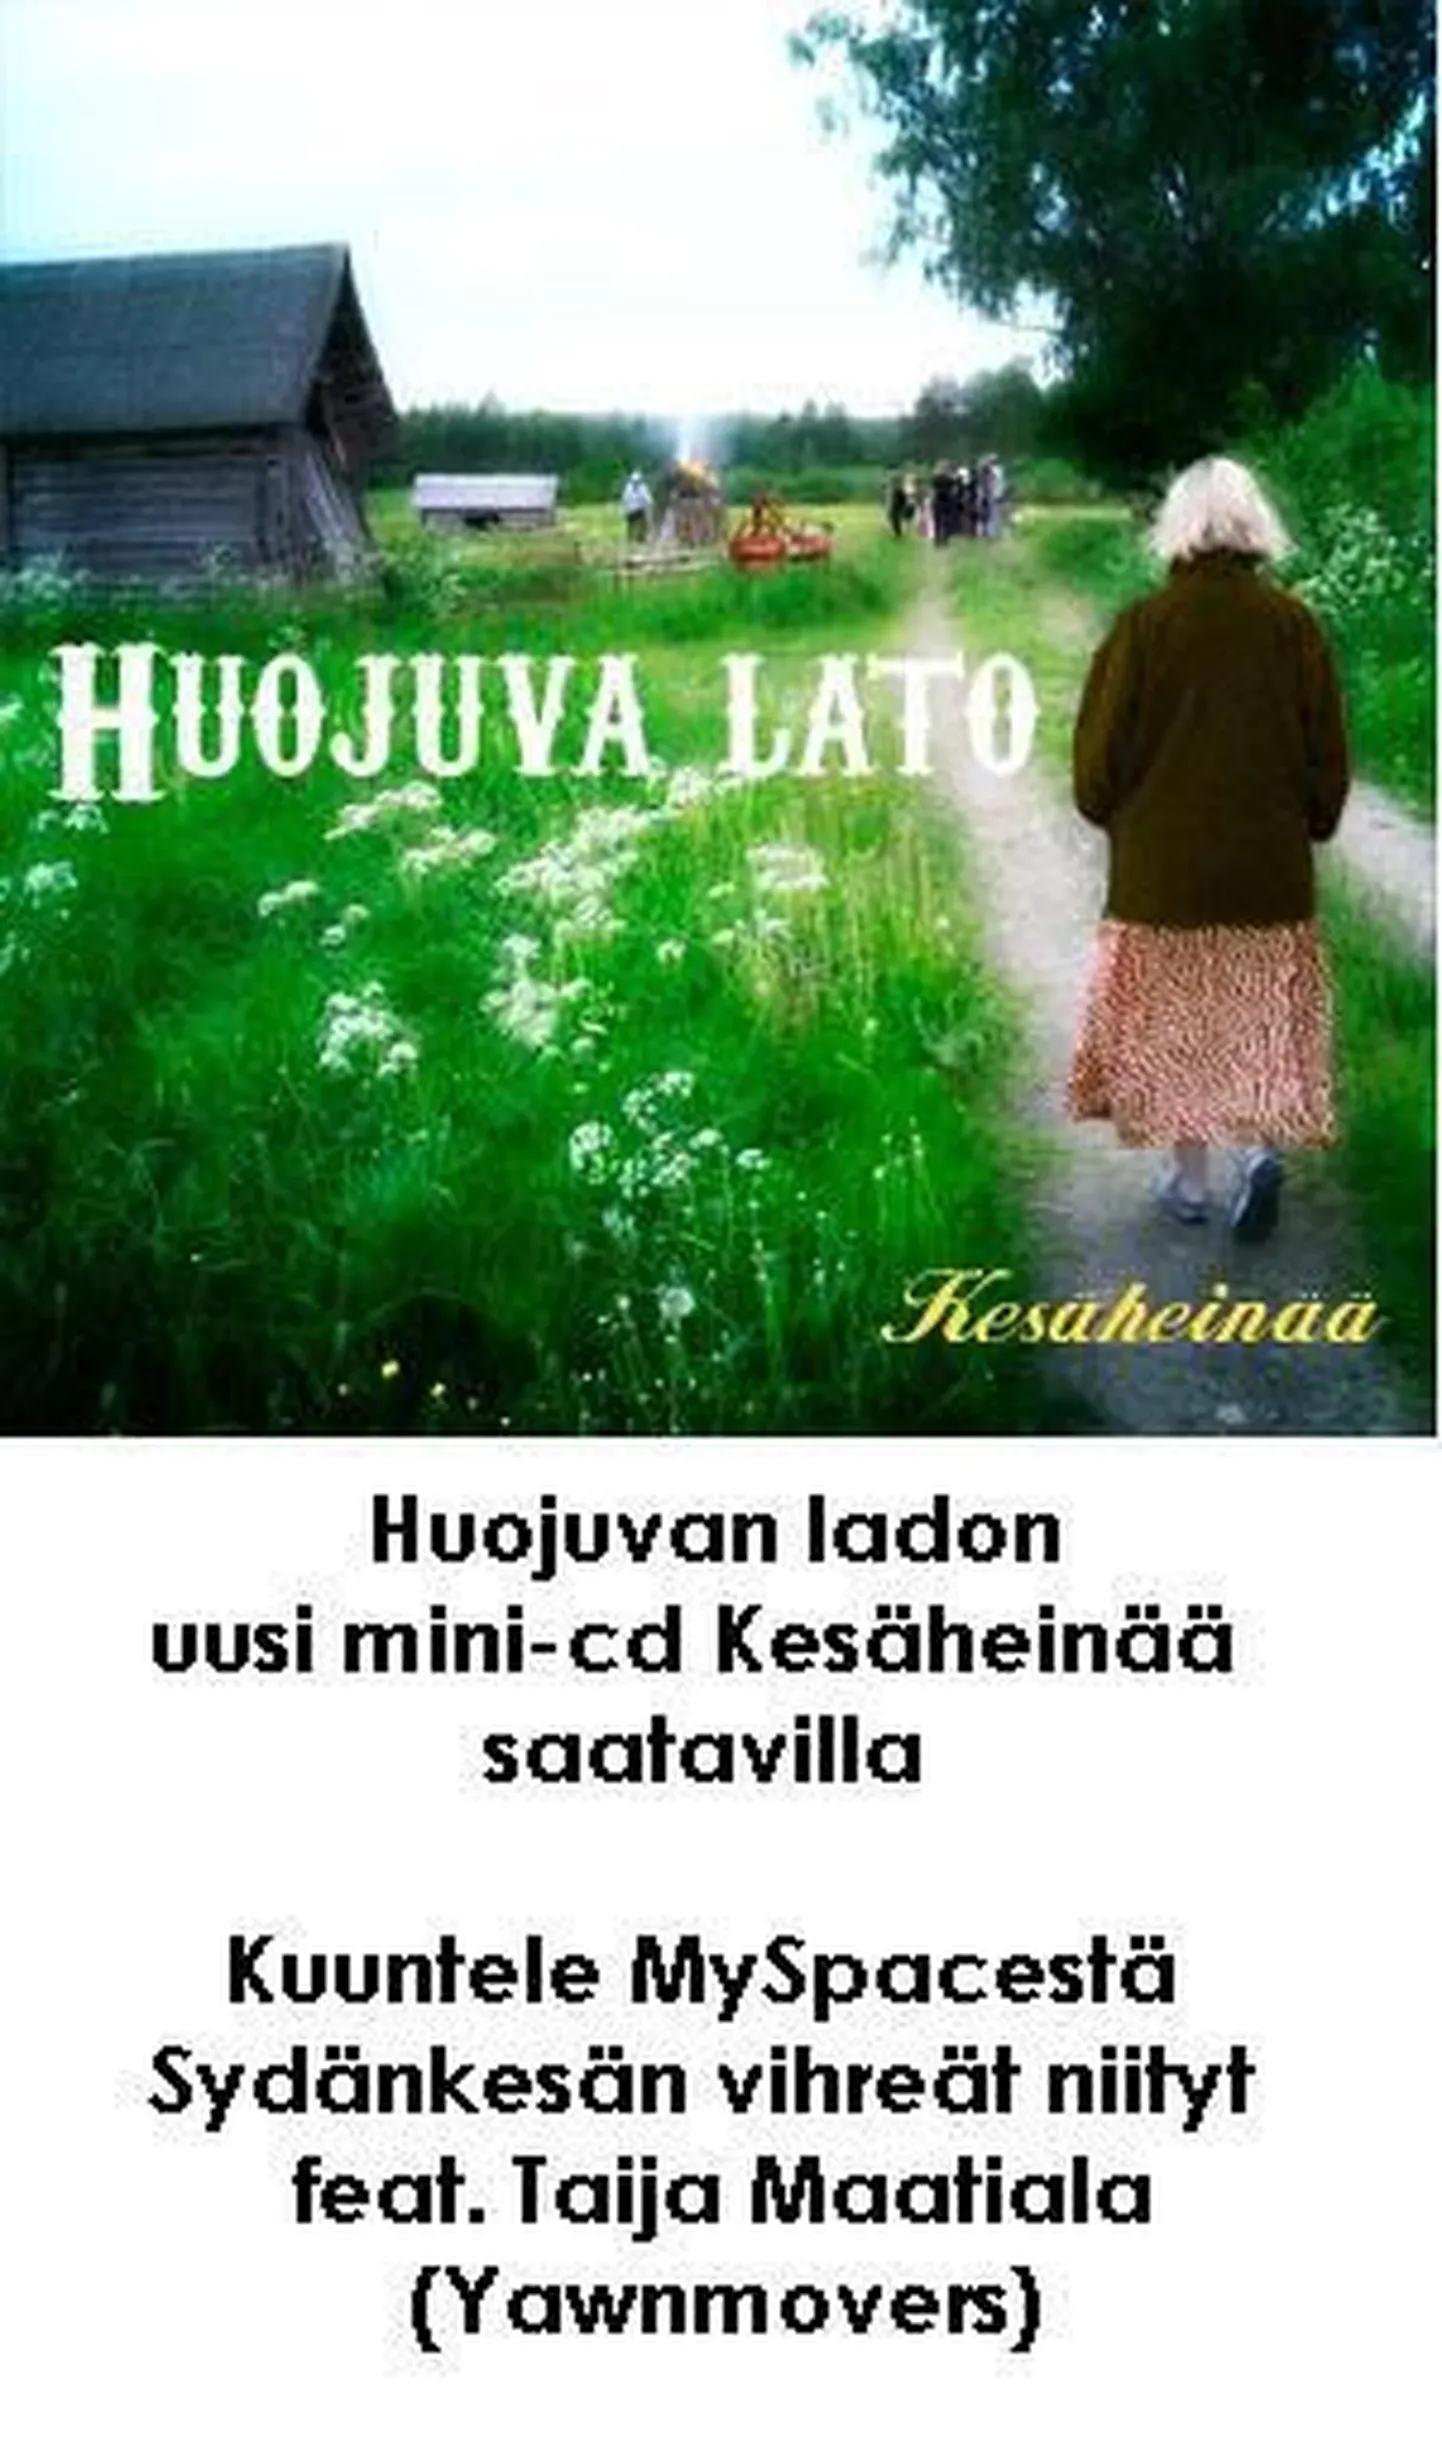 Huojuva lato mini-cd Kesäheinää, mis ilmus tänavu juunis.